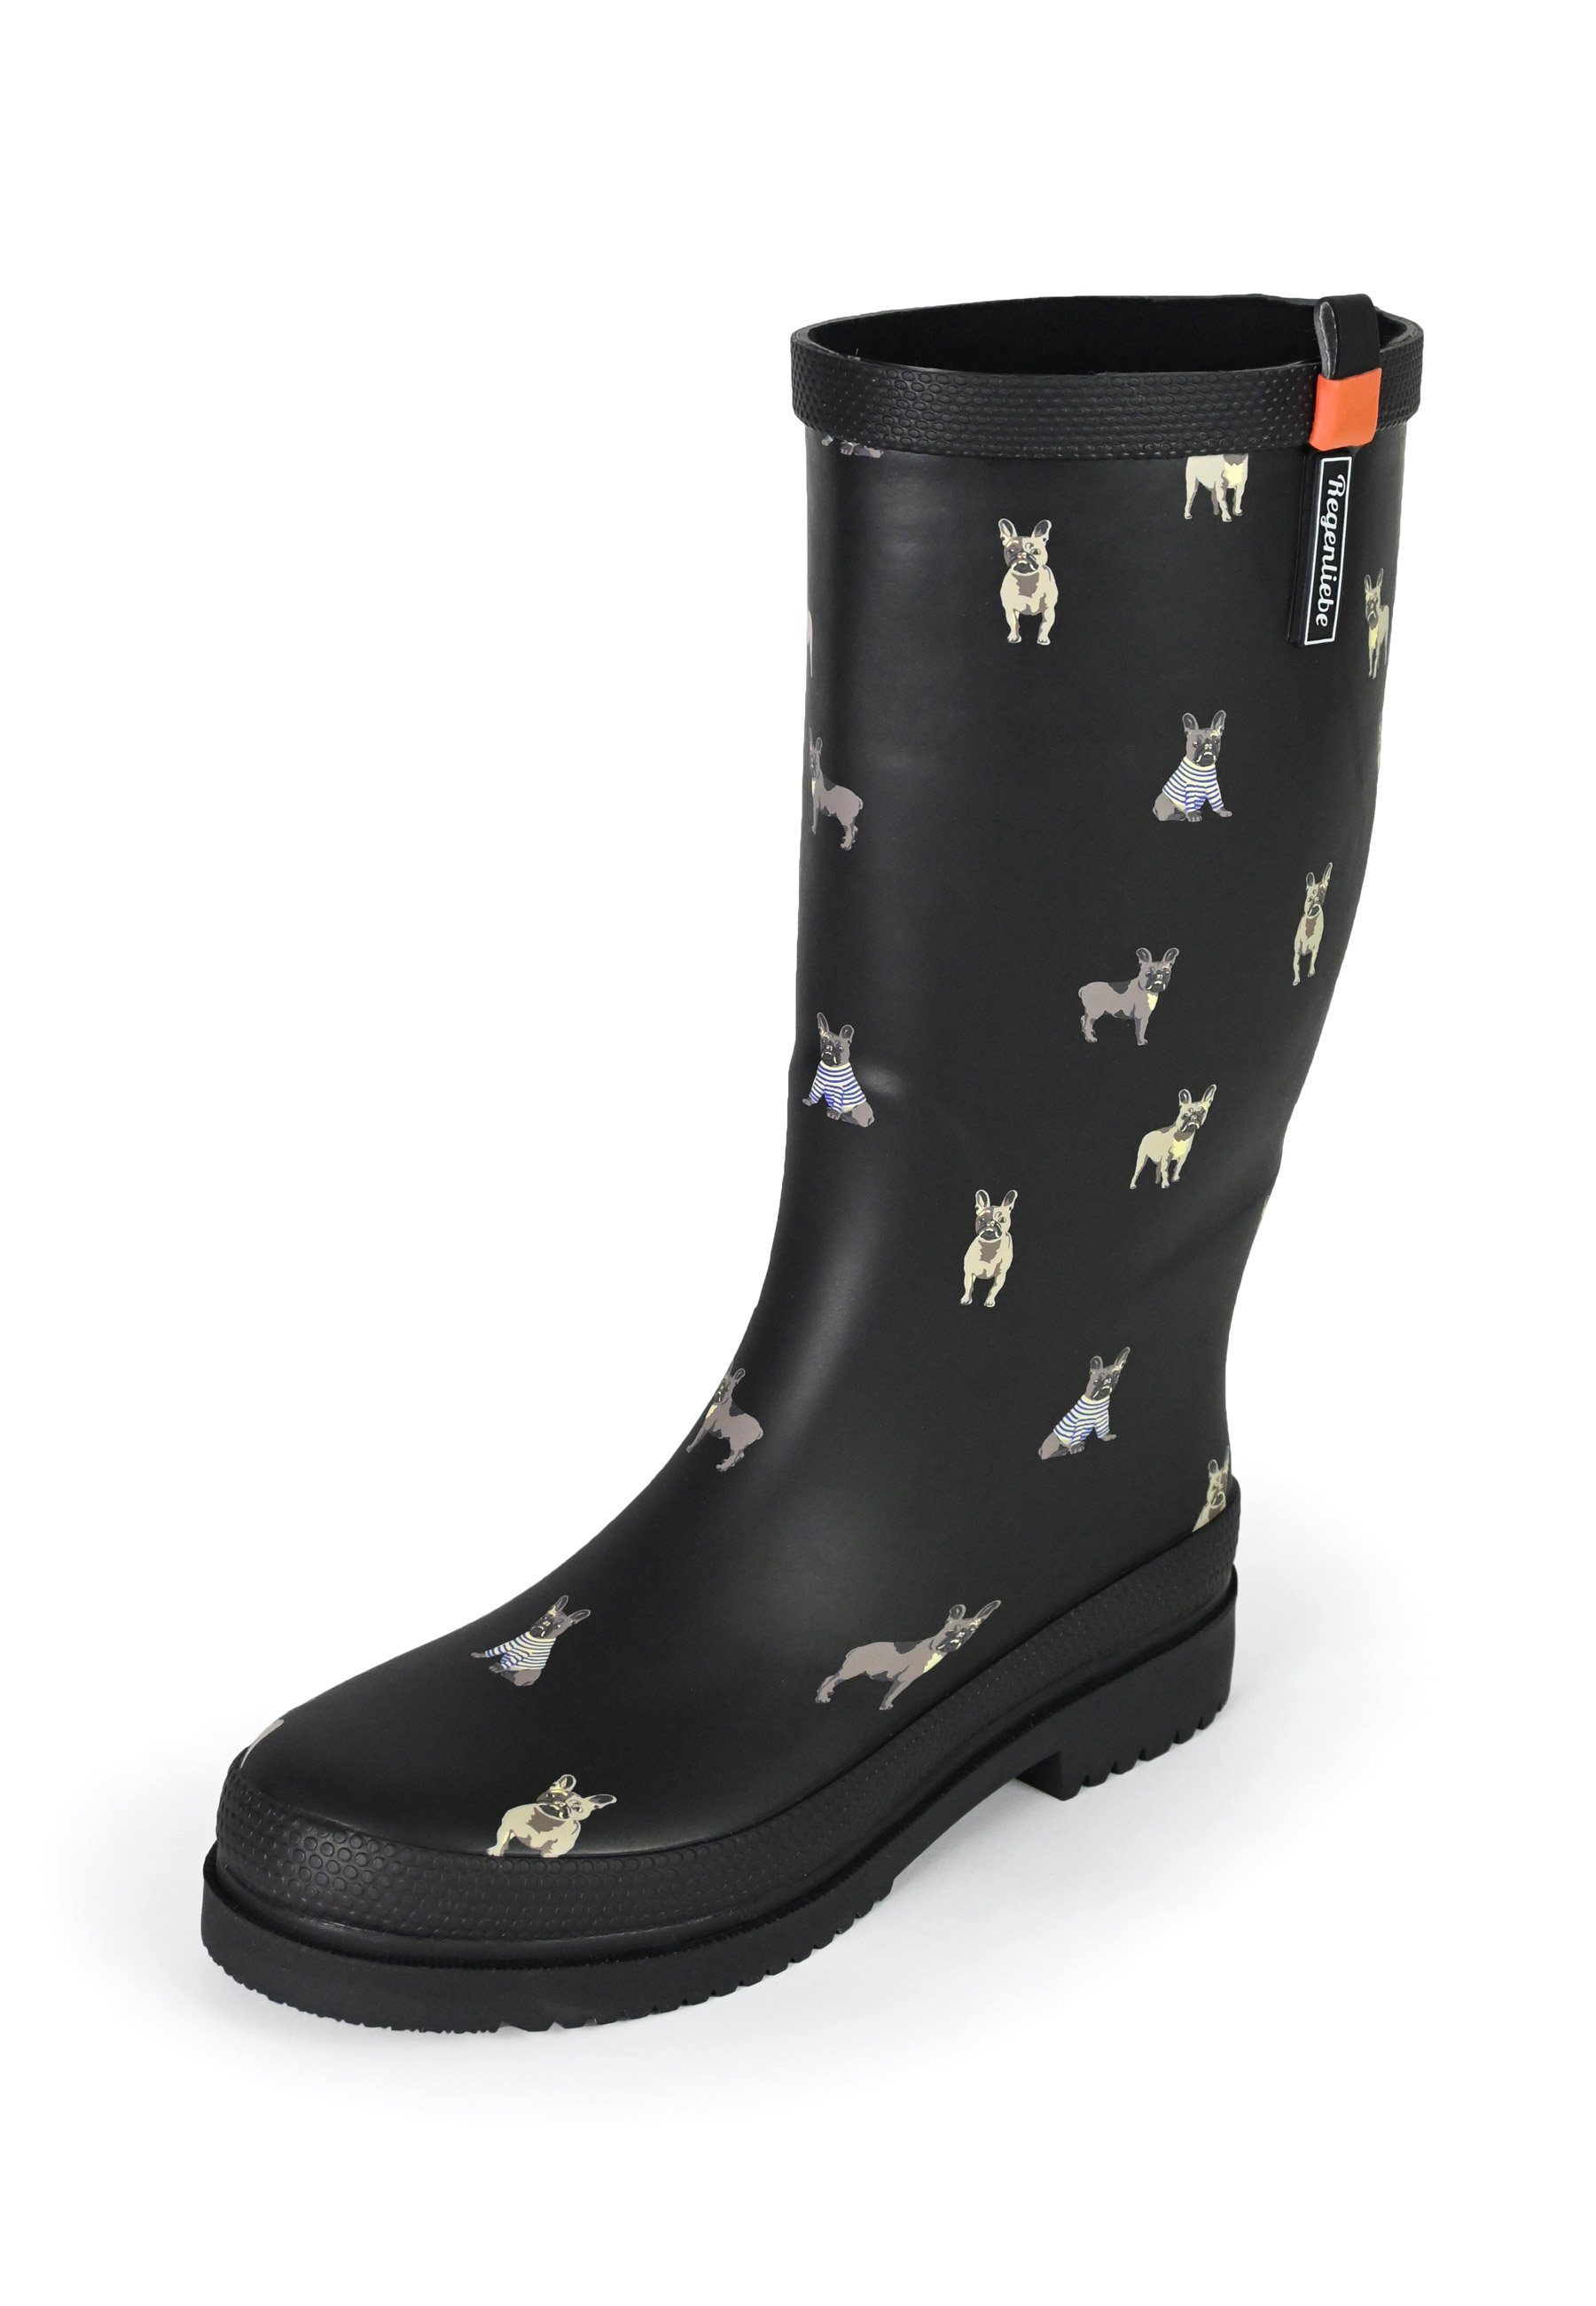 Regenliebe »Waldi Mops High« Gummistiefel Langschaft Stiefel mit Hundemotiv  online kaufen | OTTO